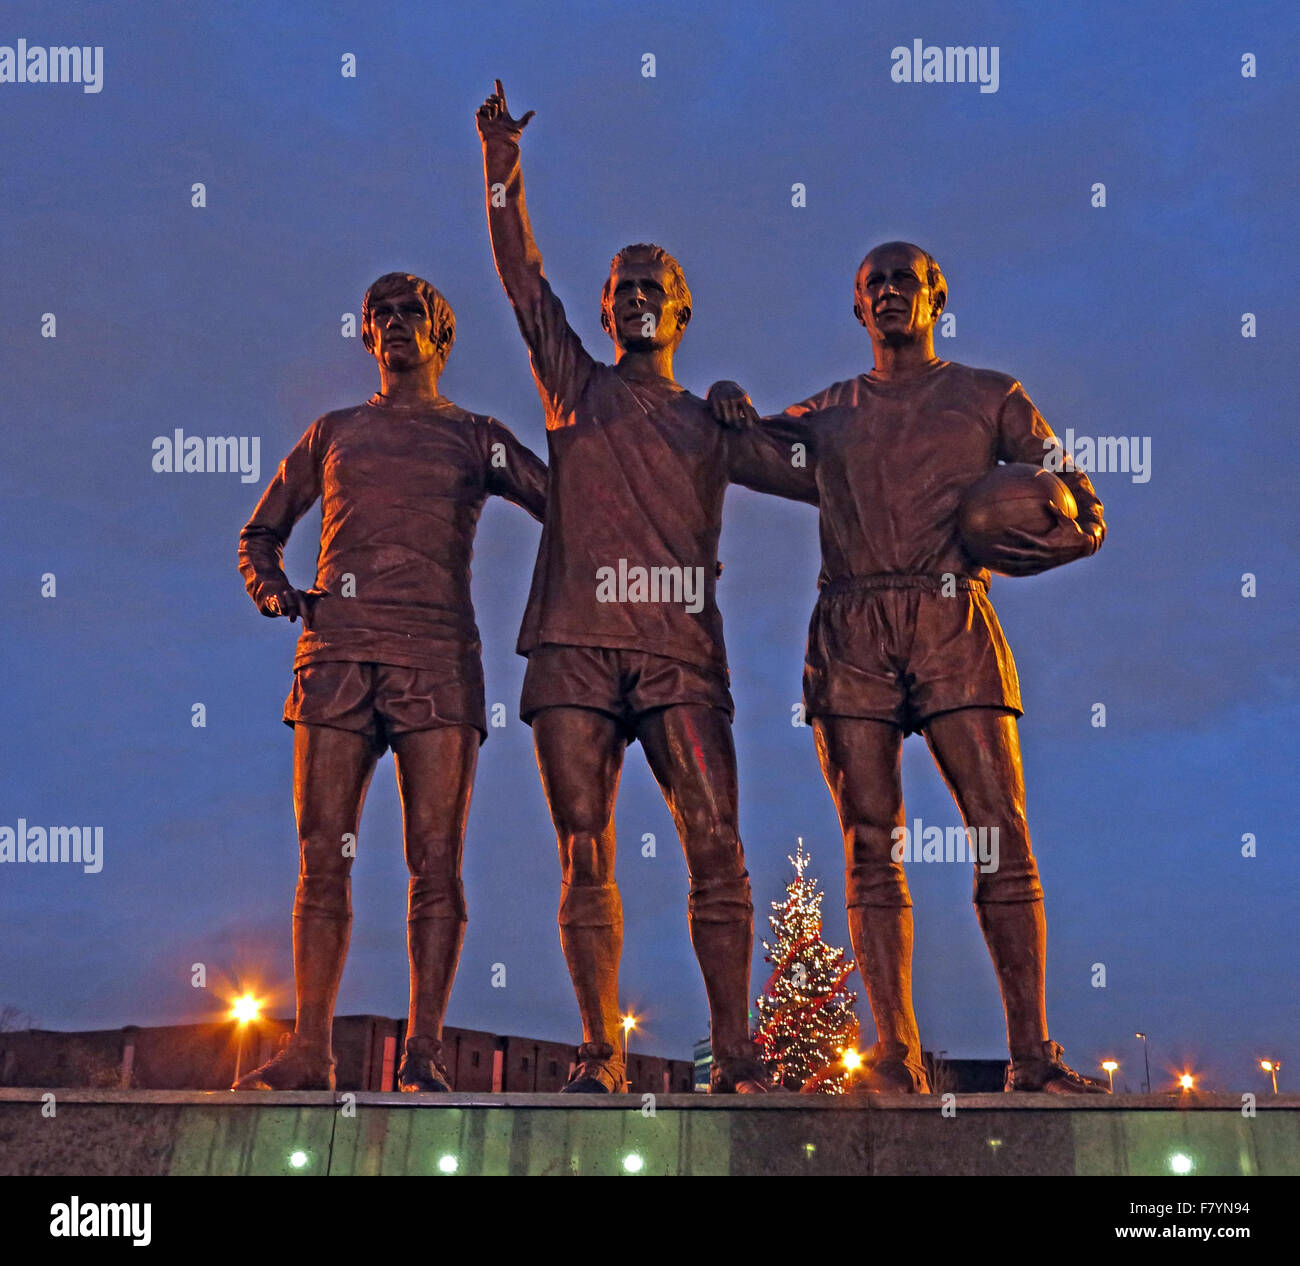 United Trinity/Sainte Trinité statue de Manchester United trio de George Best, Denis Law et Bobby Charlton au crépuscule Banque D'Images